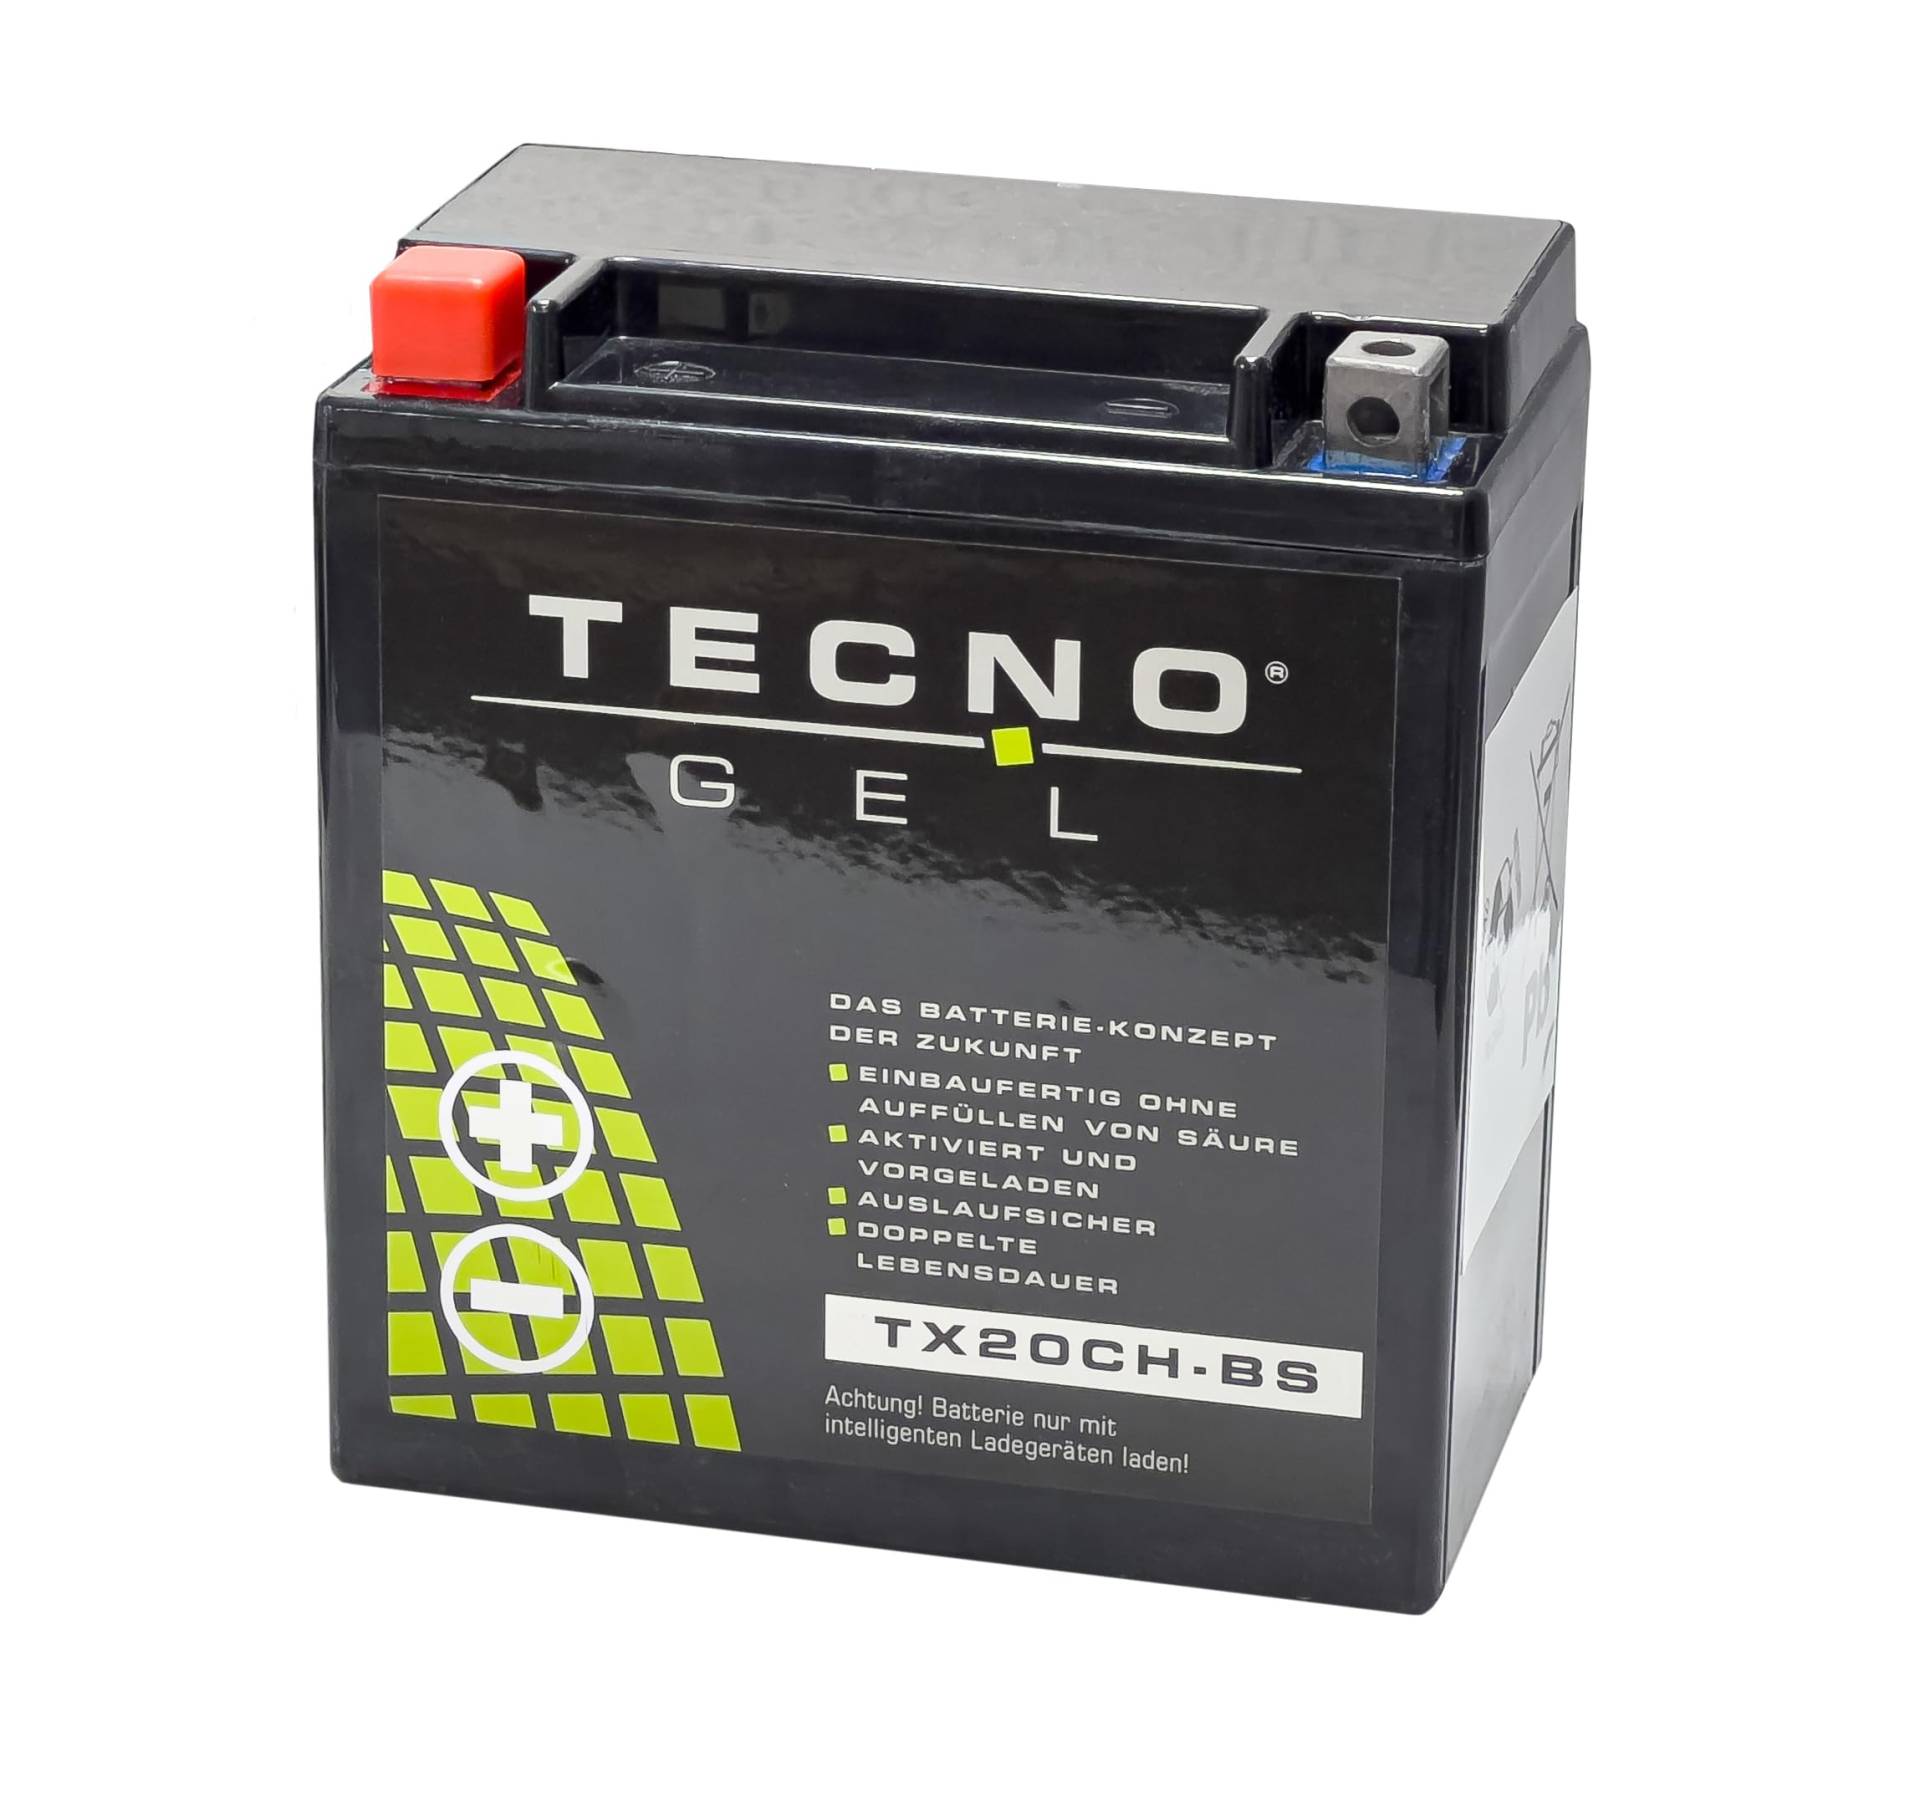 TECNO-GEL Motorrad-Batterie für YTX20CH-BS für MOTO MORINI 9 ½ 2007-2011, 12V Gel-Batterie 18Ah, 150x87x161 mm von Wirth-Federn